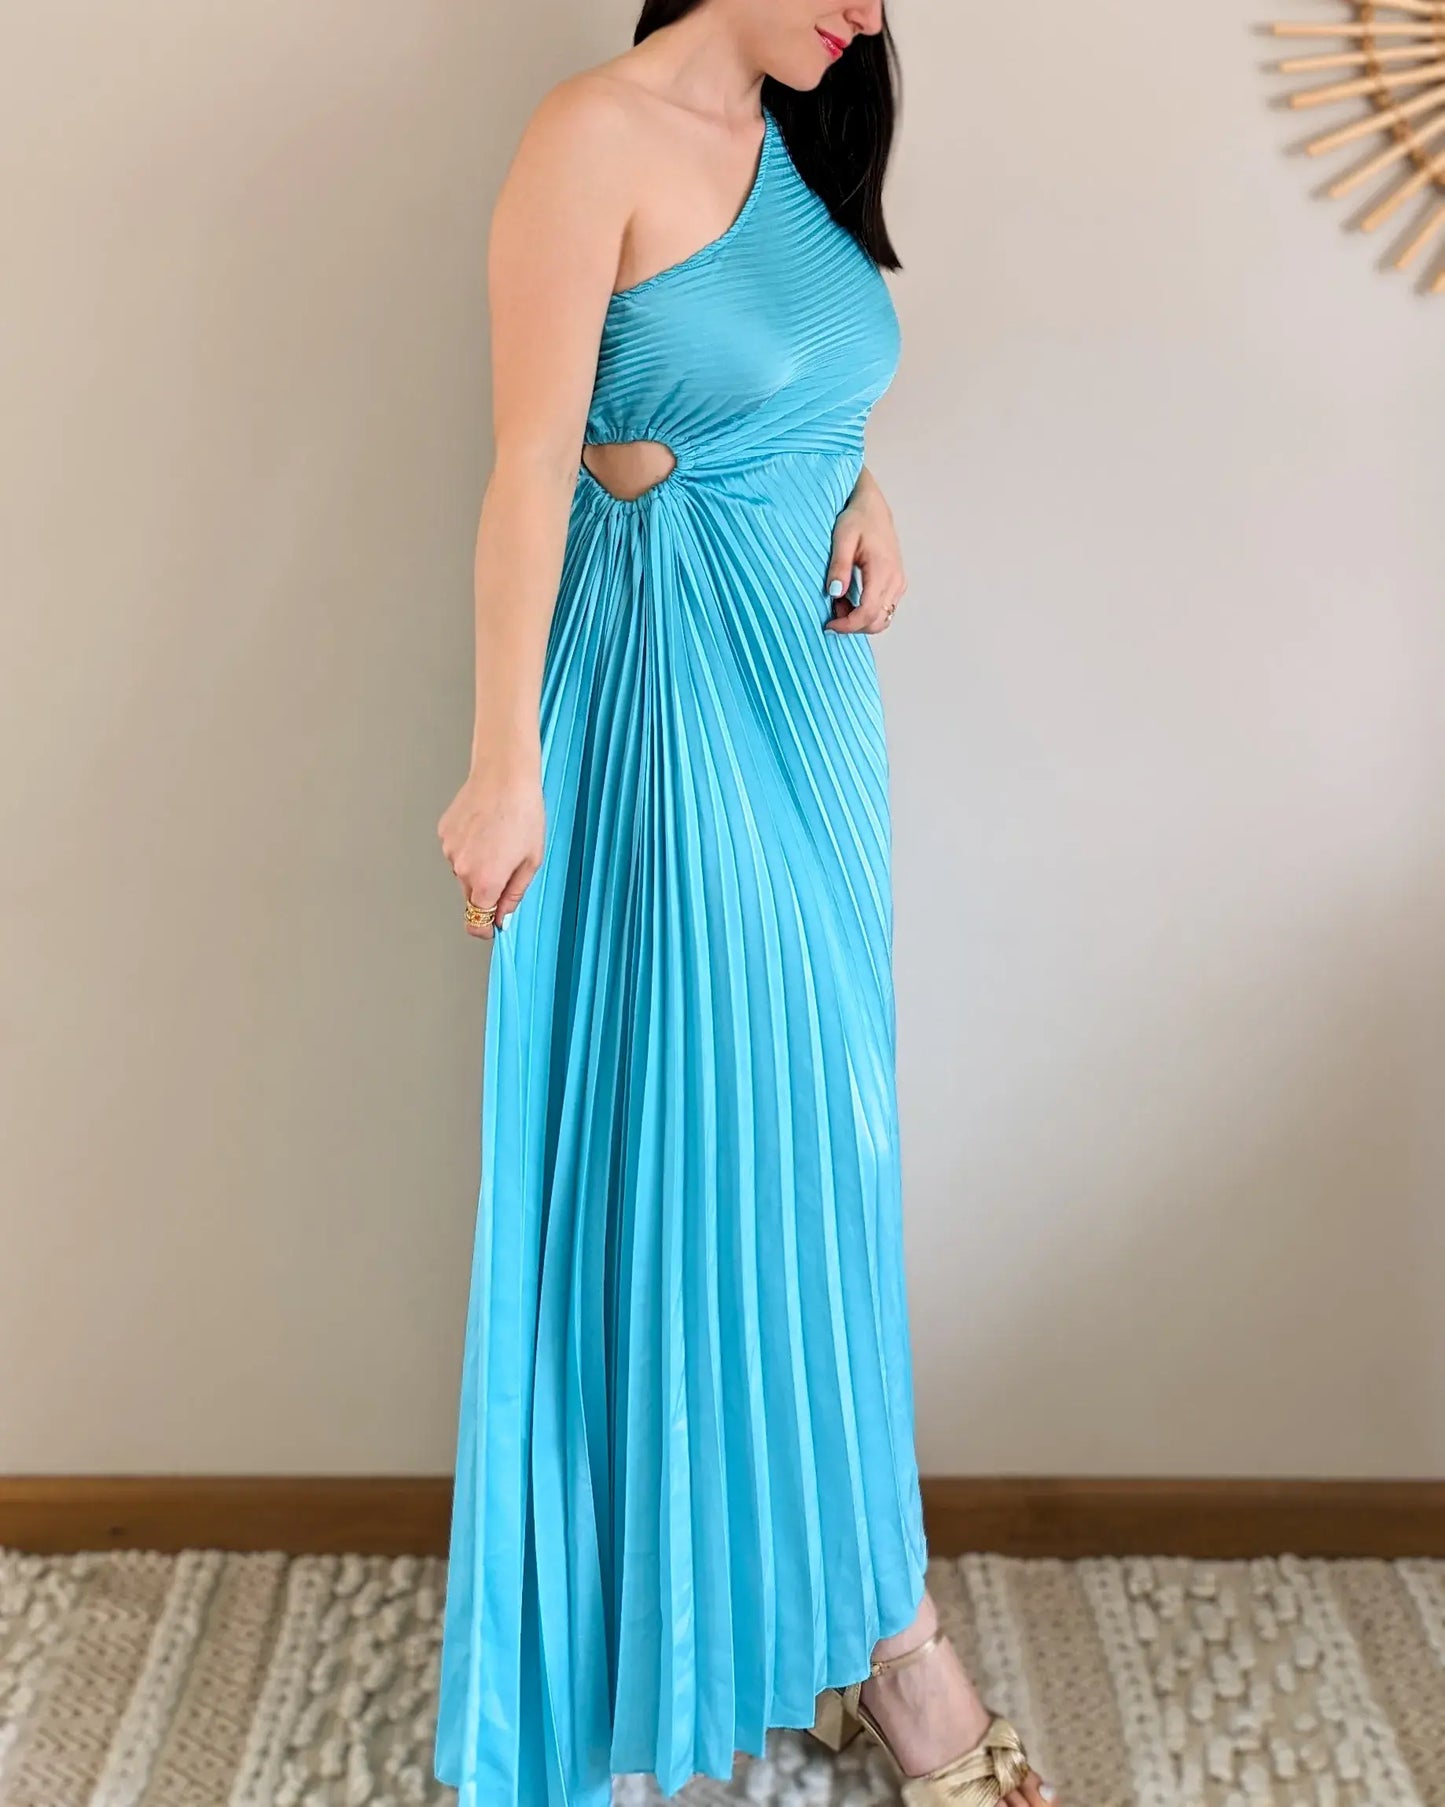 Robe - Angelina turquoise